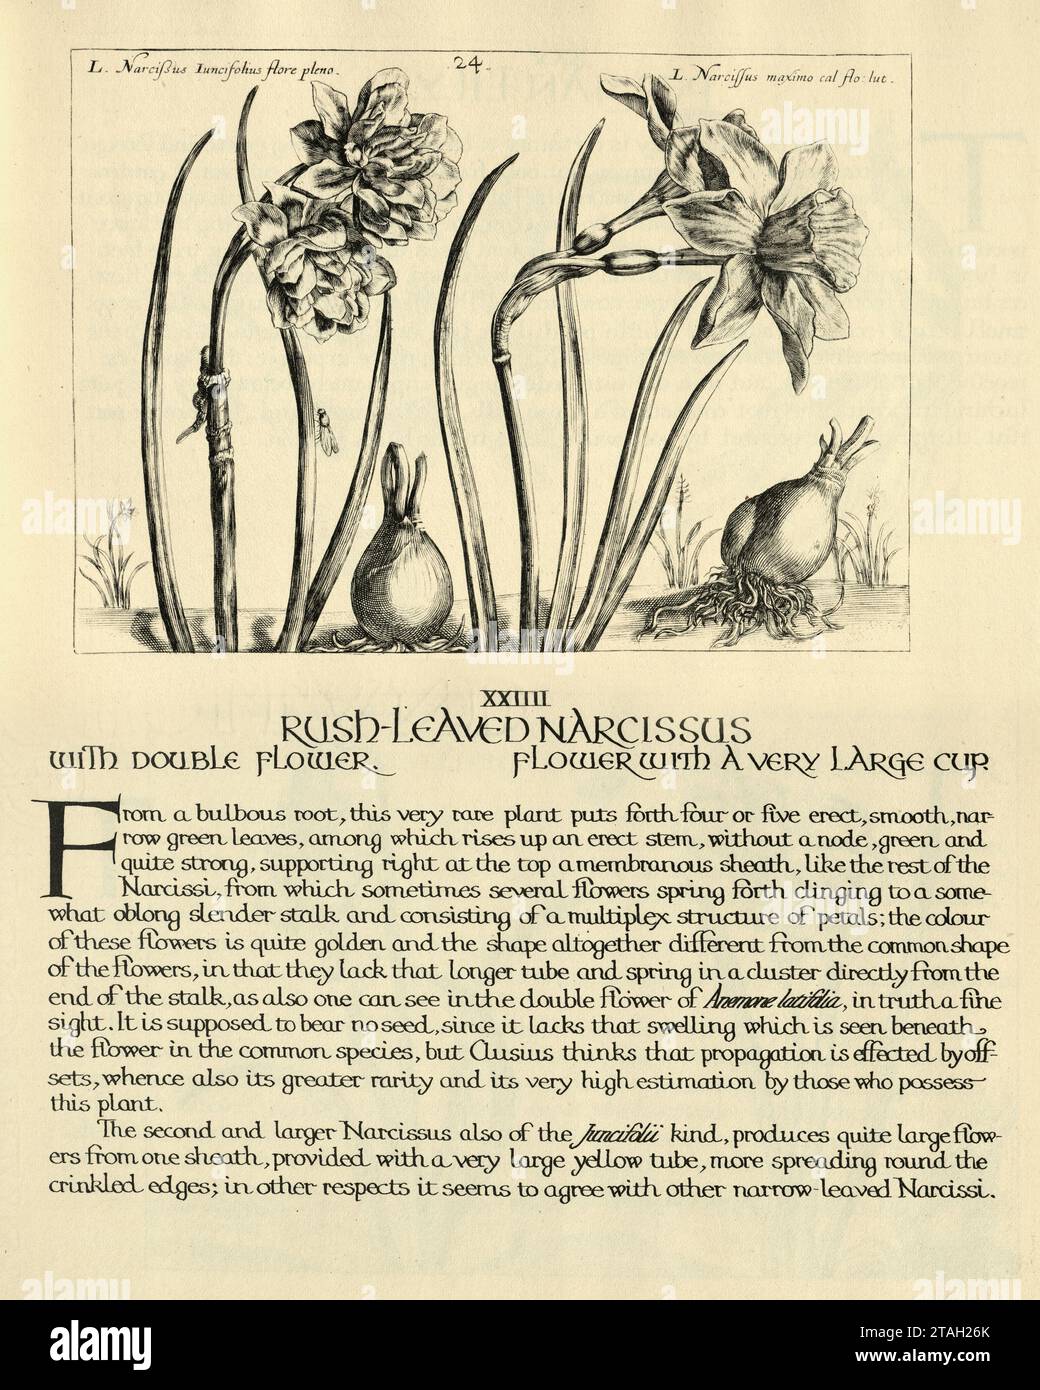 Impression botanique de narcisses à feuilles de Rush, double fleur de jonquille, d'Hortus Floridus par Crispin de passe, illustration vintage, 17e siècle Banque D'Images